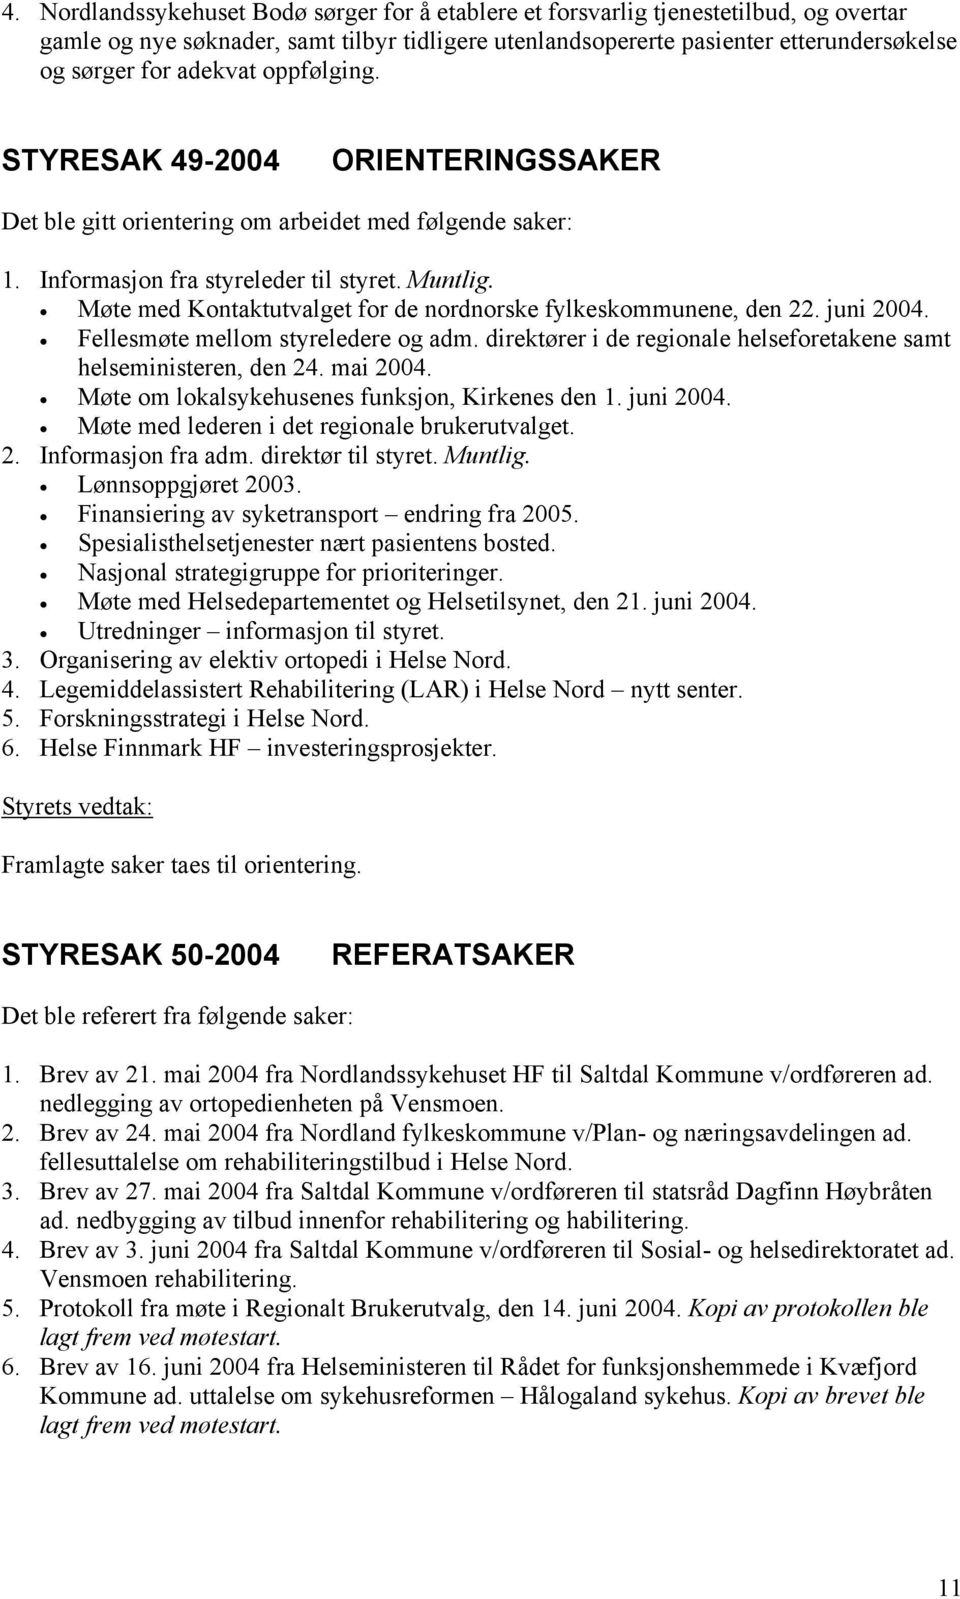 Møte med Kontaktutvalget for de nordnorske fylkeskommunene, den 22. juni 2004. Fellesmøte mellom styreledere og adm. direktører i de regionale helseforetakene samt helseministeren, den 24. mai 2004.